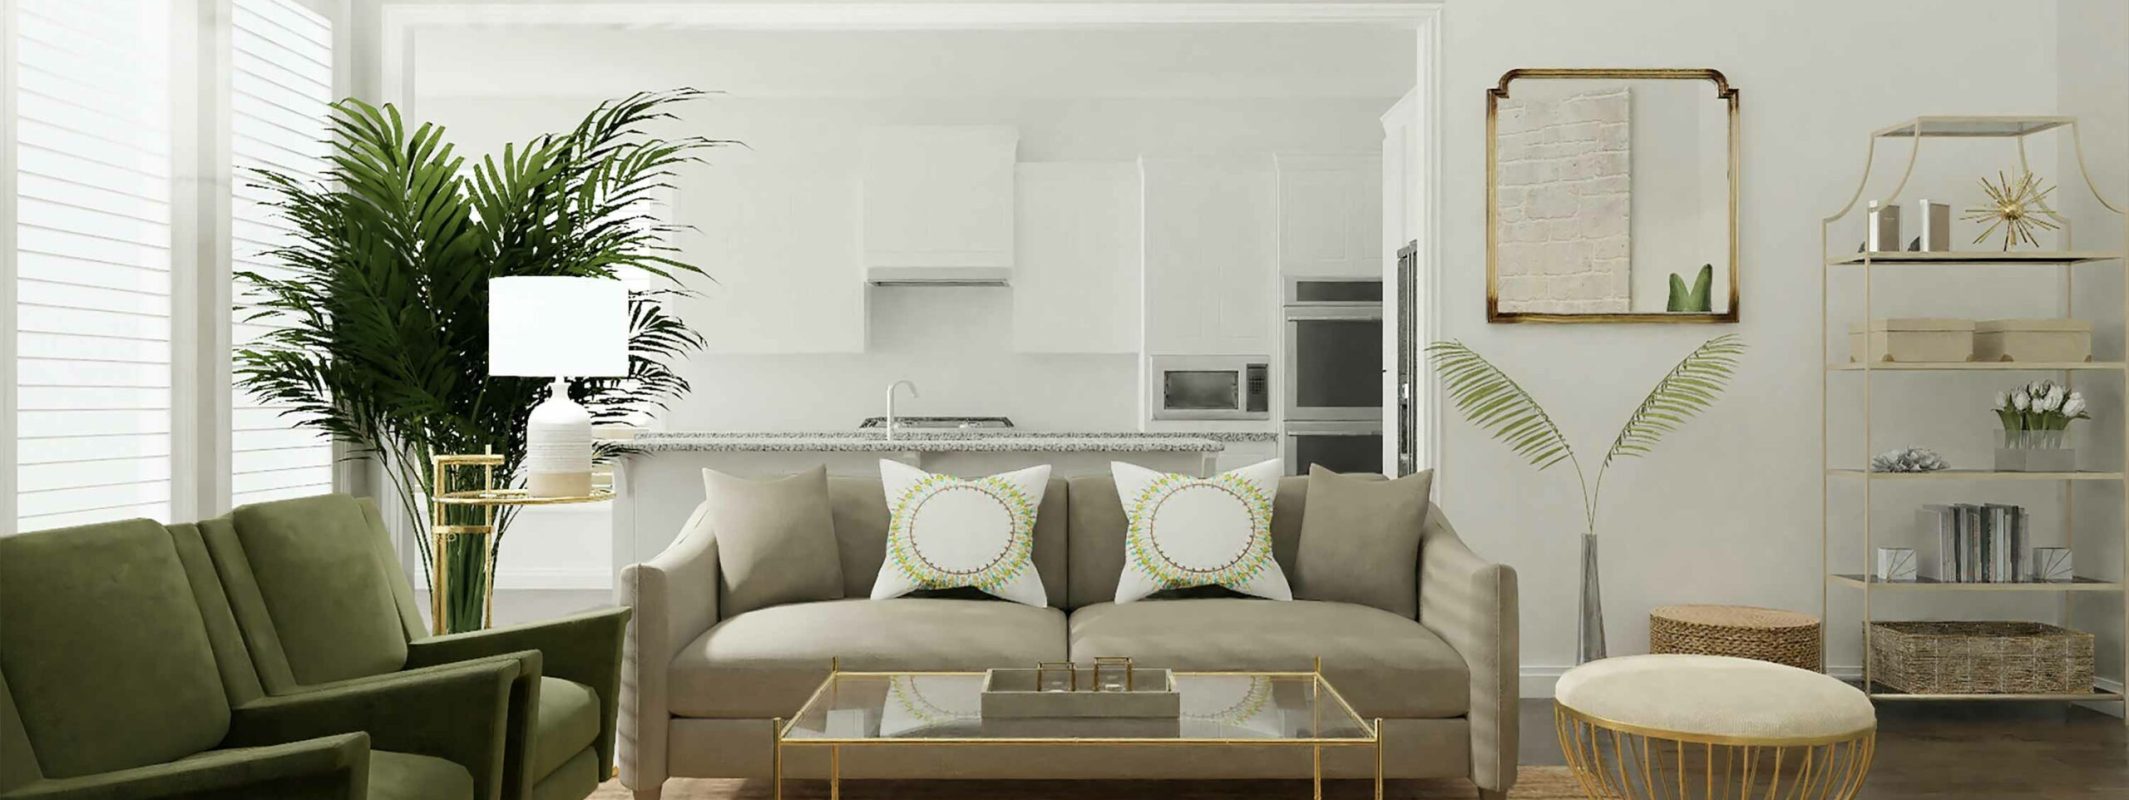 raumgestalter wohnzimmer interior design grün beige weiß dekokissen auf couch bleher raumausstatter in nürtingen